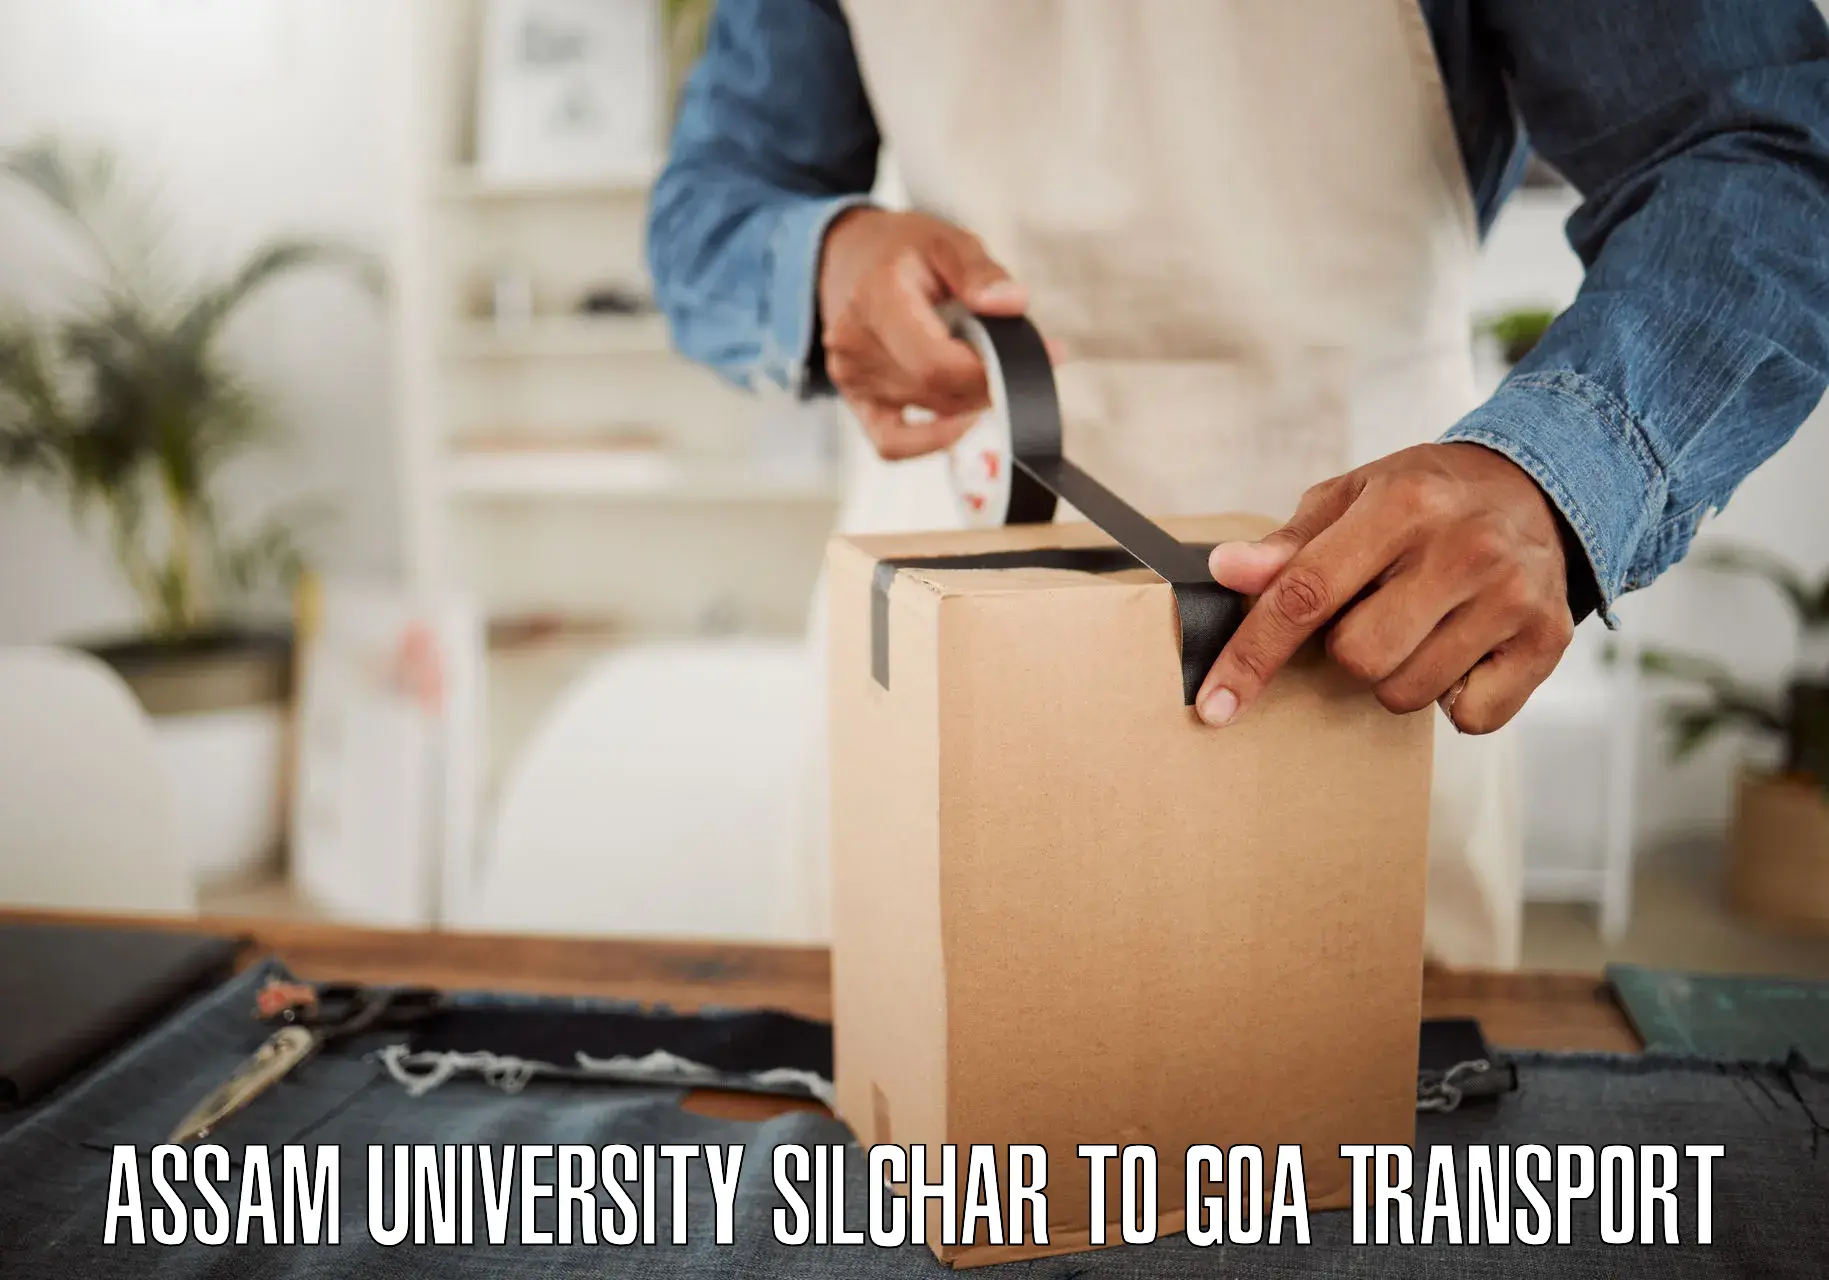 Furniture transport service Assam University Silchar to Sanvordem